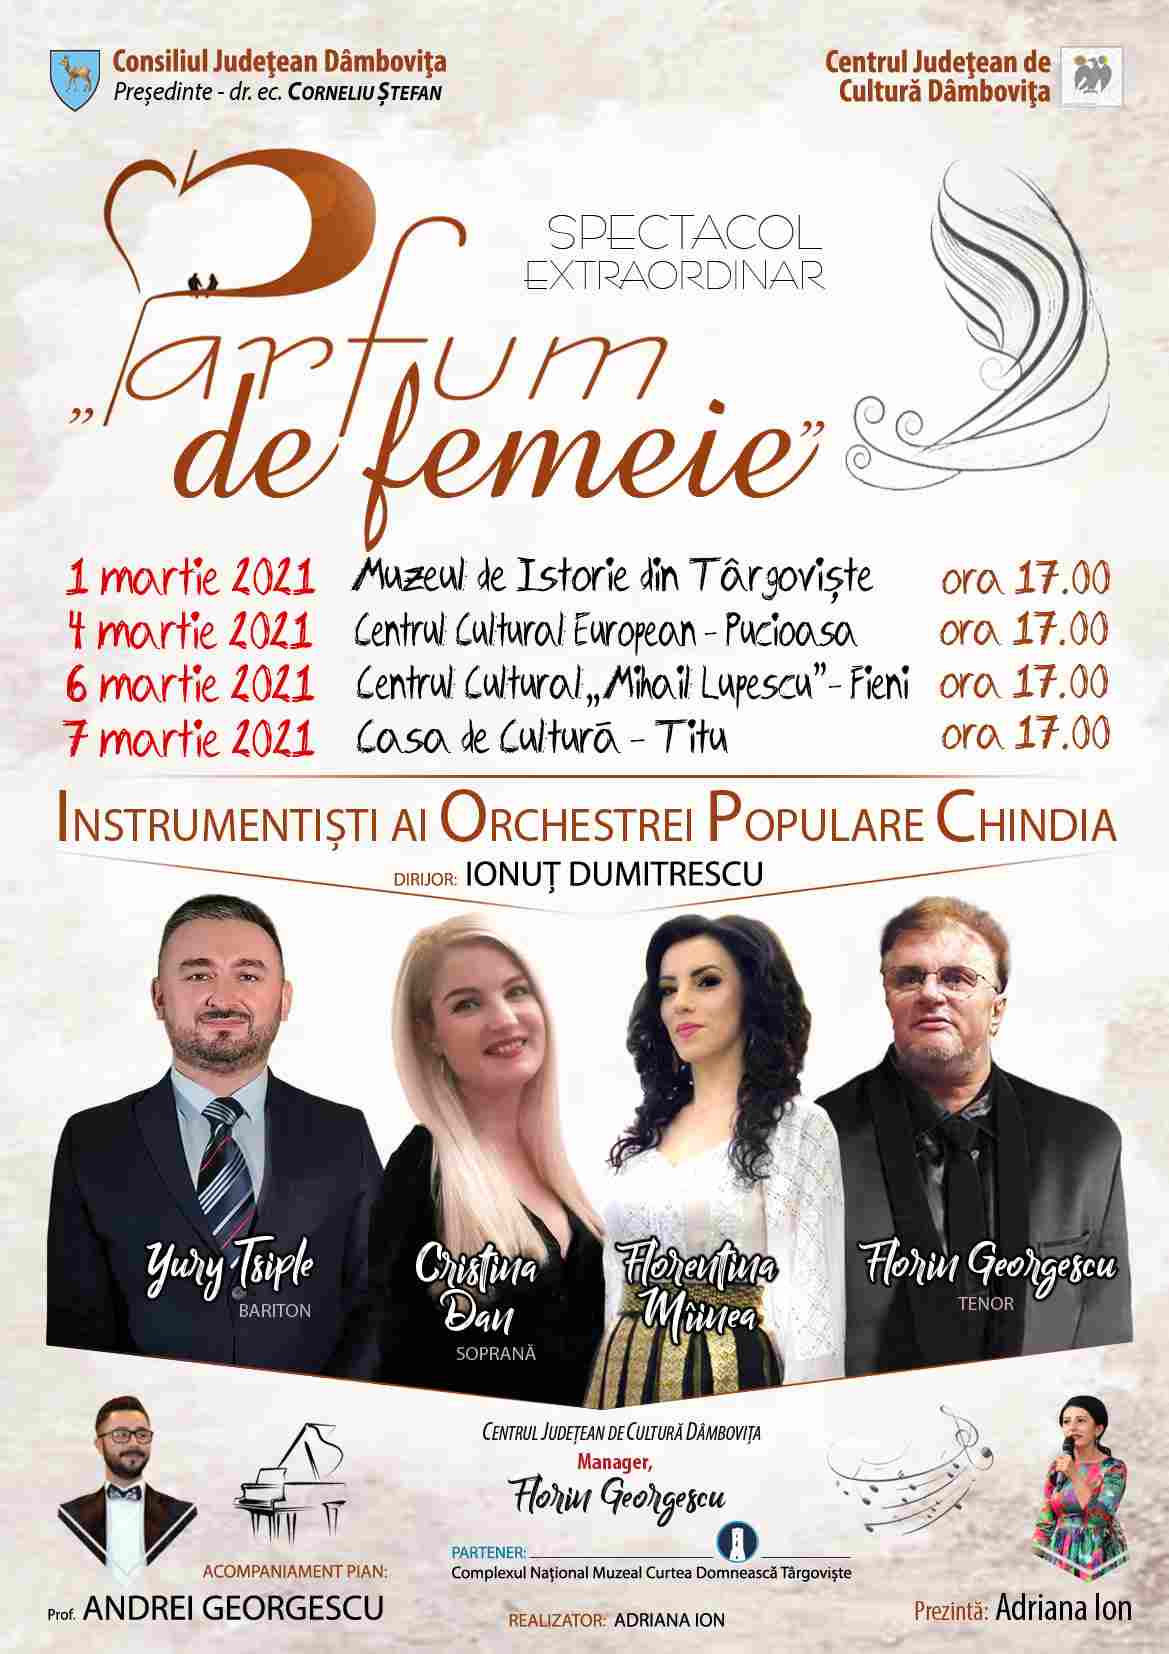  Centrul Județean de Cultură Dâmbovița va organiza, în perioada 1-7 martie 2021, un miniturneu muzical intitulat ”Parfum de femeie”.